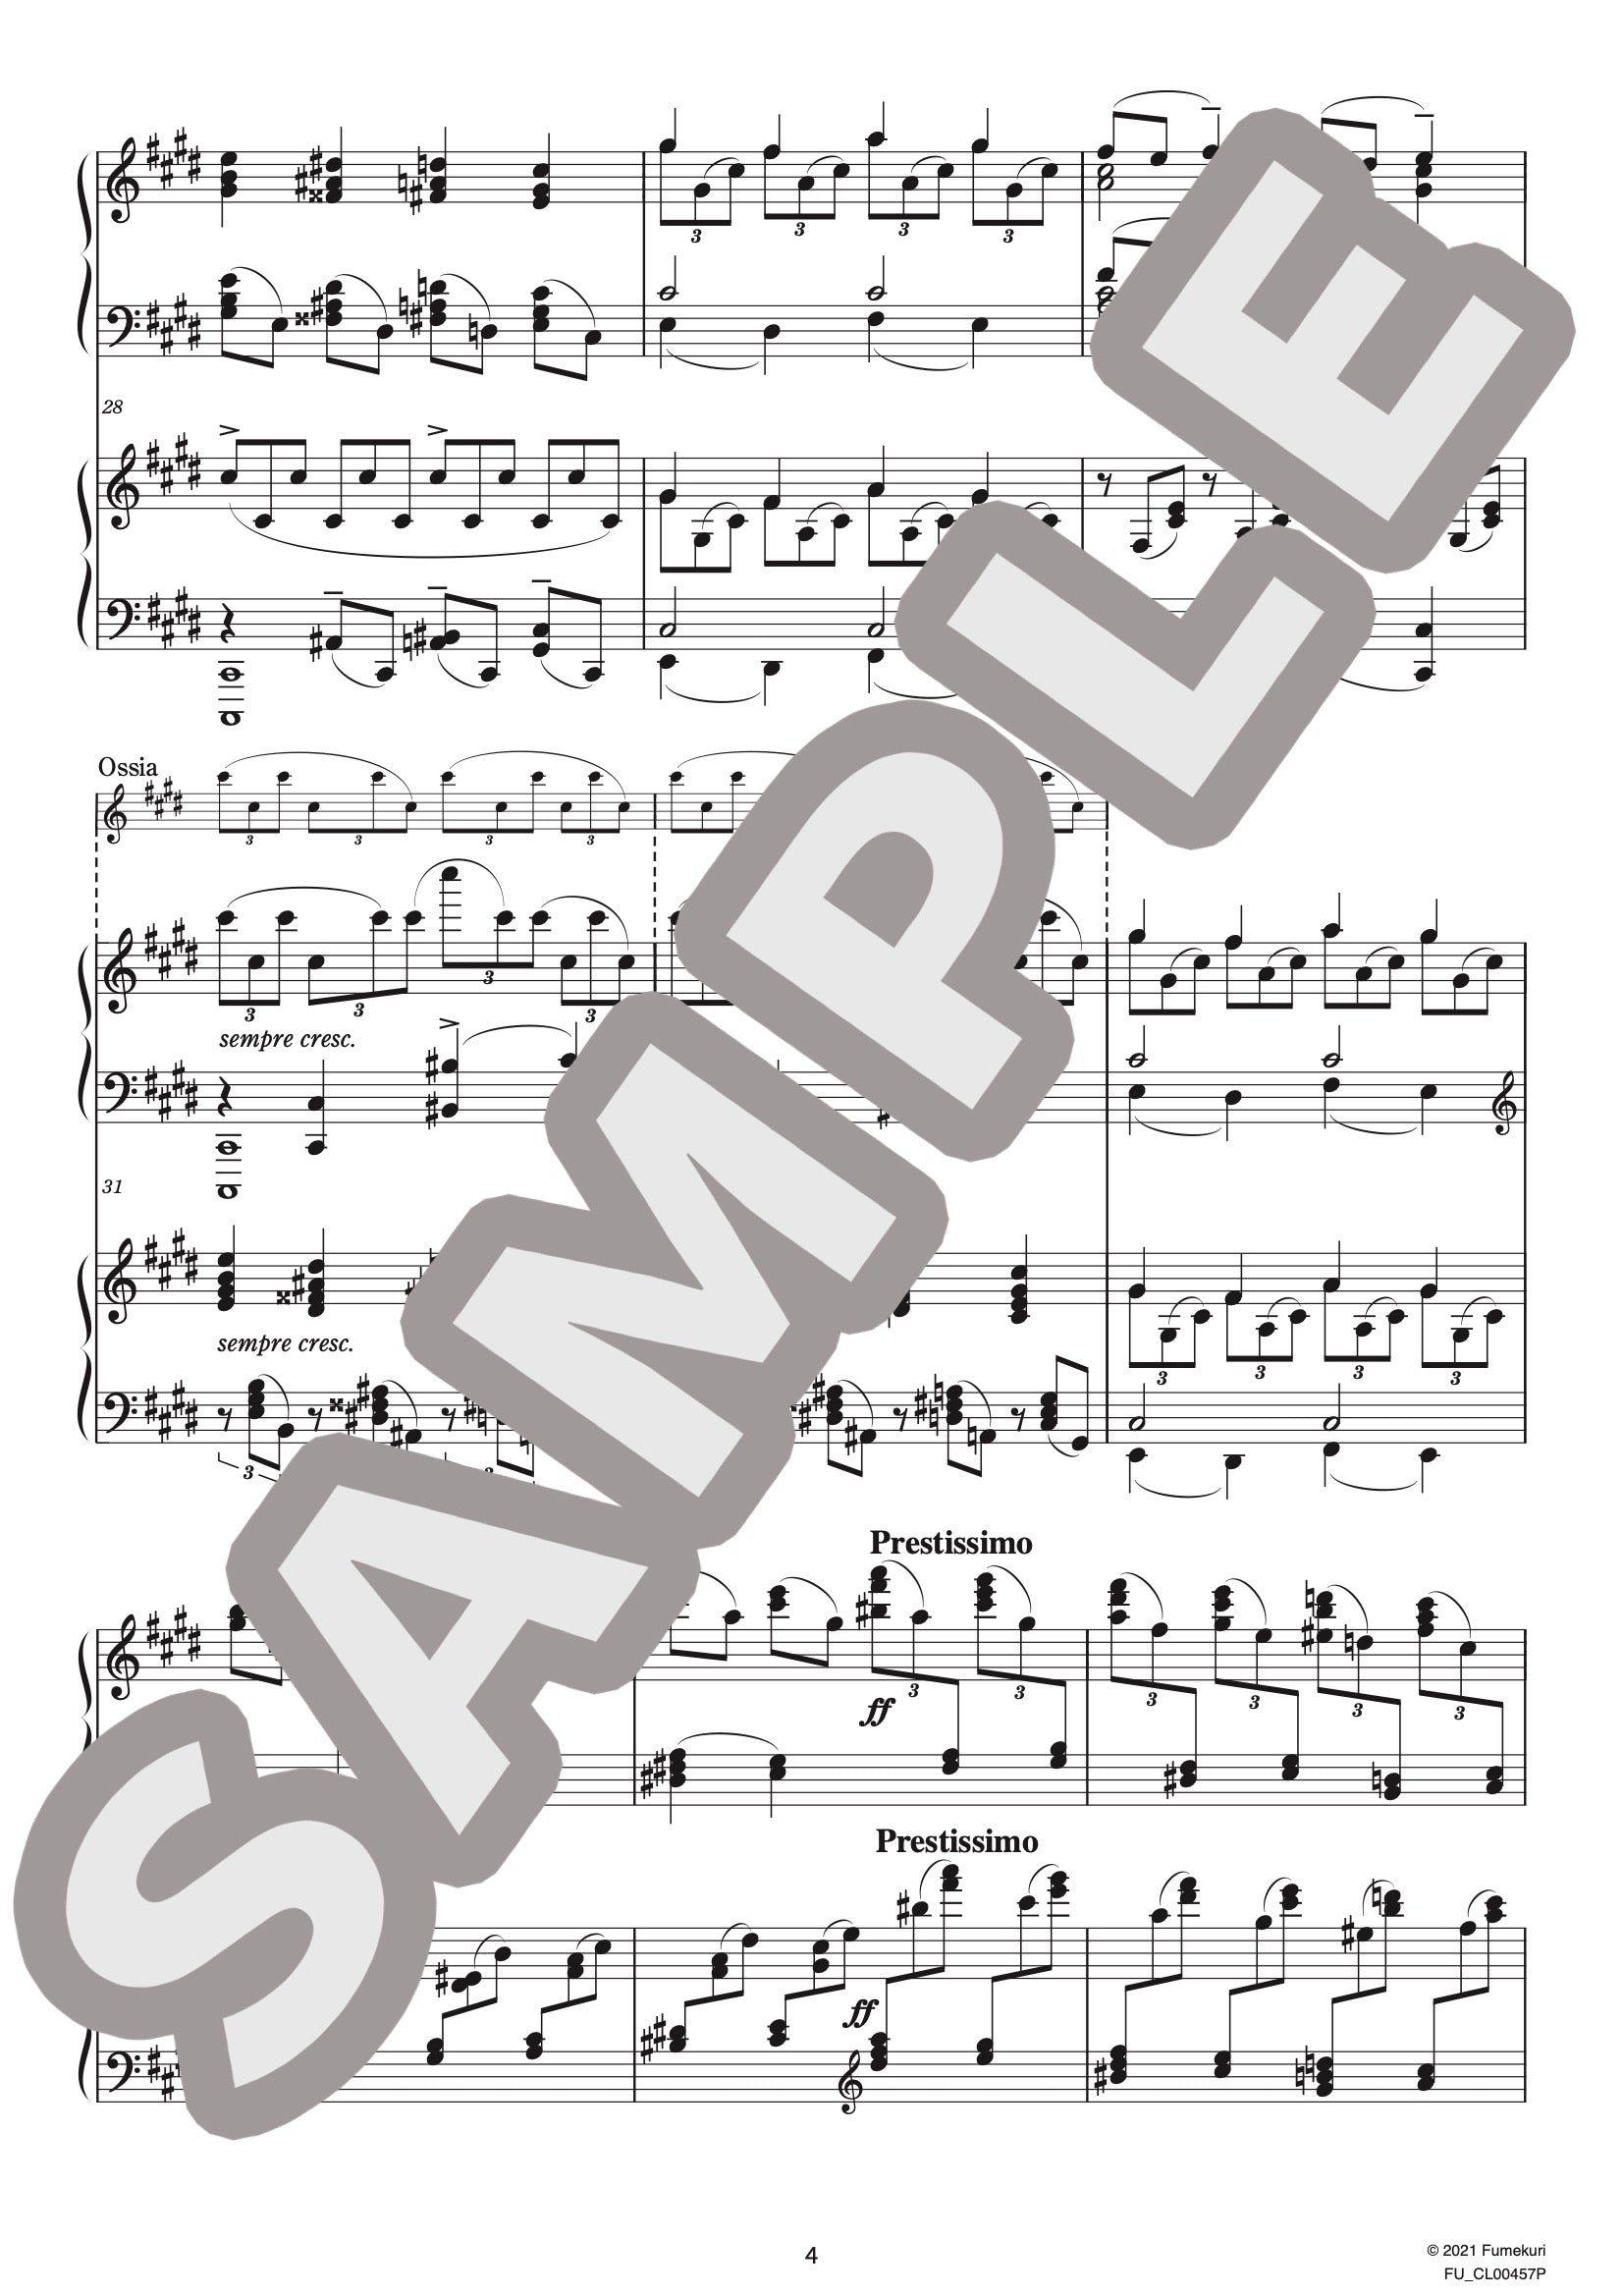 前奏曲嬰ハ短調 作品3-2「鐘」［2台ピアノ（作曲家自身によるアレンジ版）］ /  クラシック・オリジナル楽曲【中上級】｜RACHMANINOVのダウンロード楽譜 - fumekuri（フメクリ）